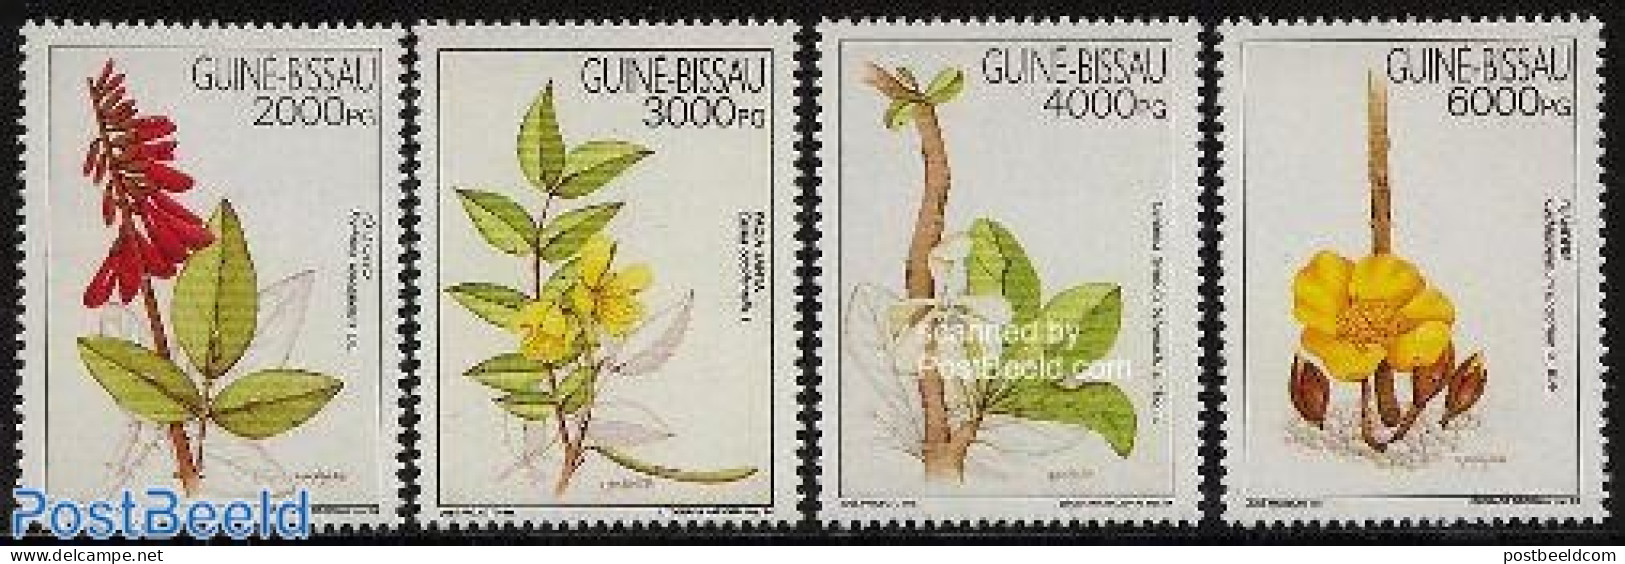 Guinea Bissau 1994 Health Plants 4v, Mint NH, Health - Nature - Health - Flowers & Plants - Guinea-Bissau